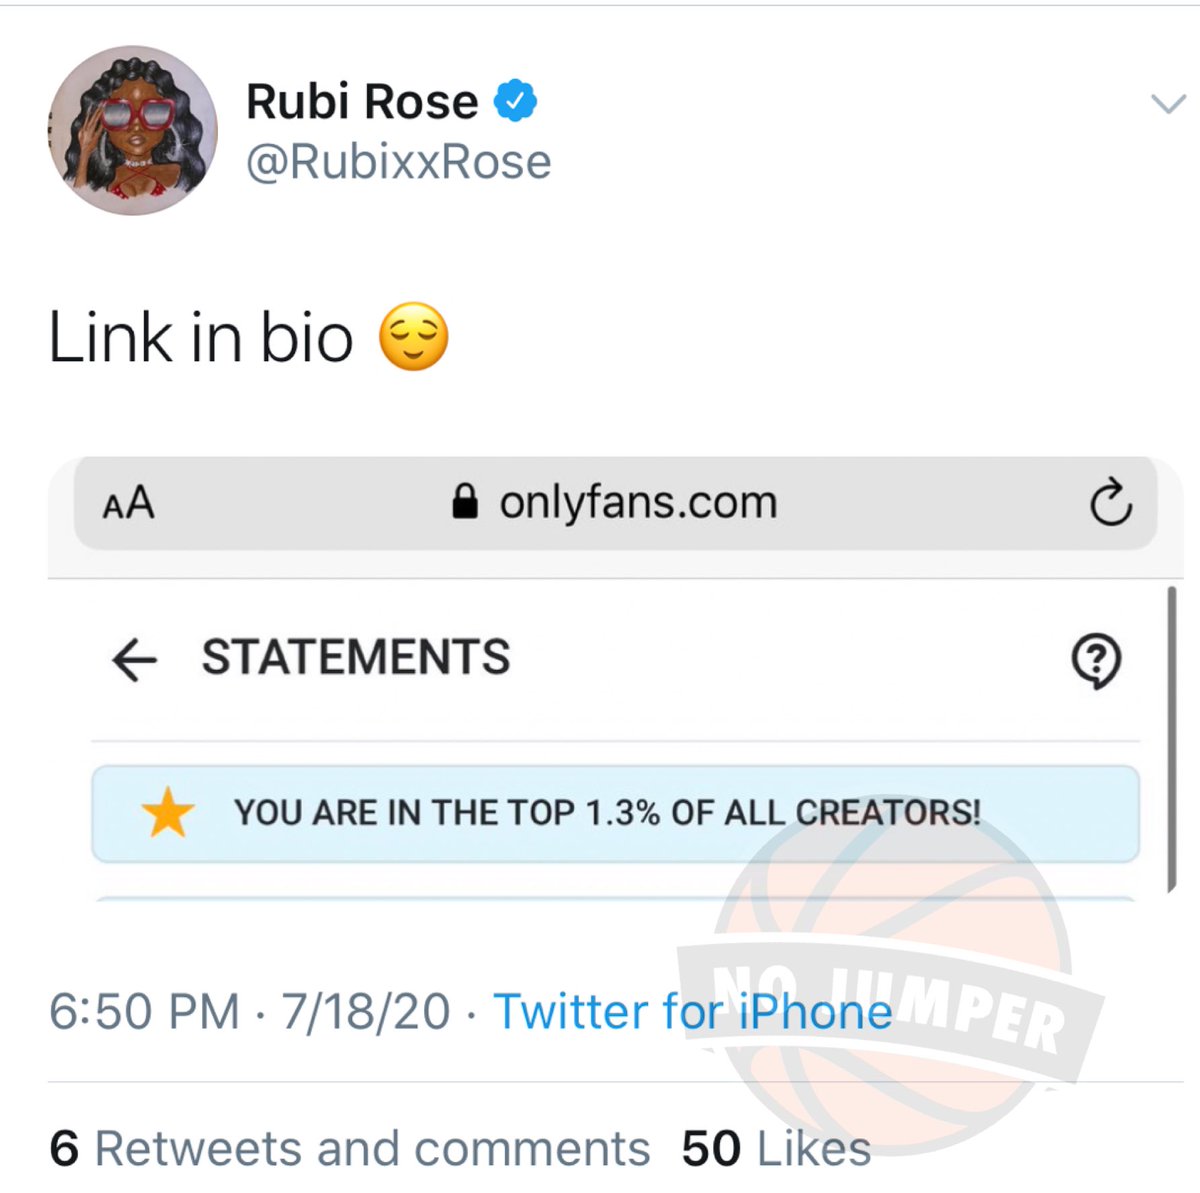 Rubi rose only fans